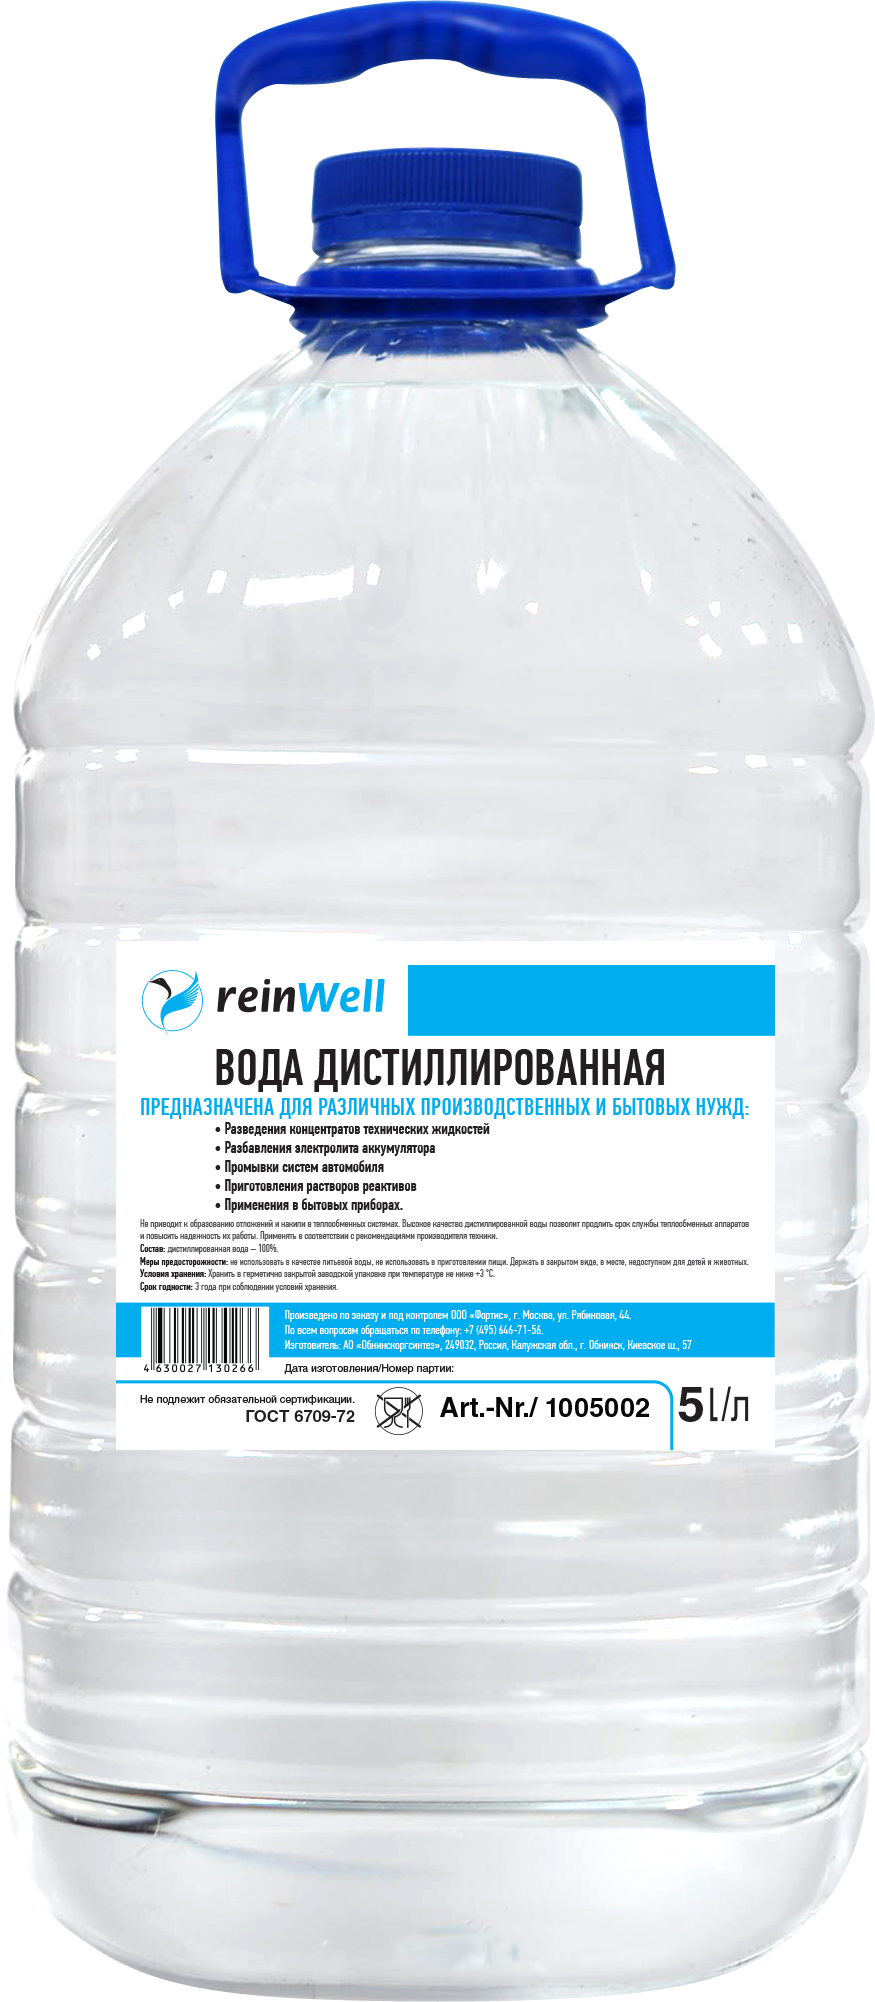 Вода дистиллированная REINWELL RW-02 4.8 кг (5 л). Дистиллированная вода REINWELL RW-02. Вода дистиллированная (1,5л) socralin. Дистиллированная вода (Сант-сервис) 5 л (4шт). Дистиллированной воды 10 мл